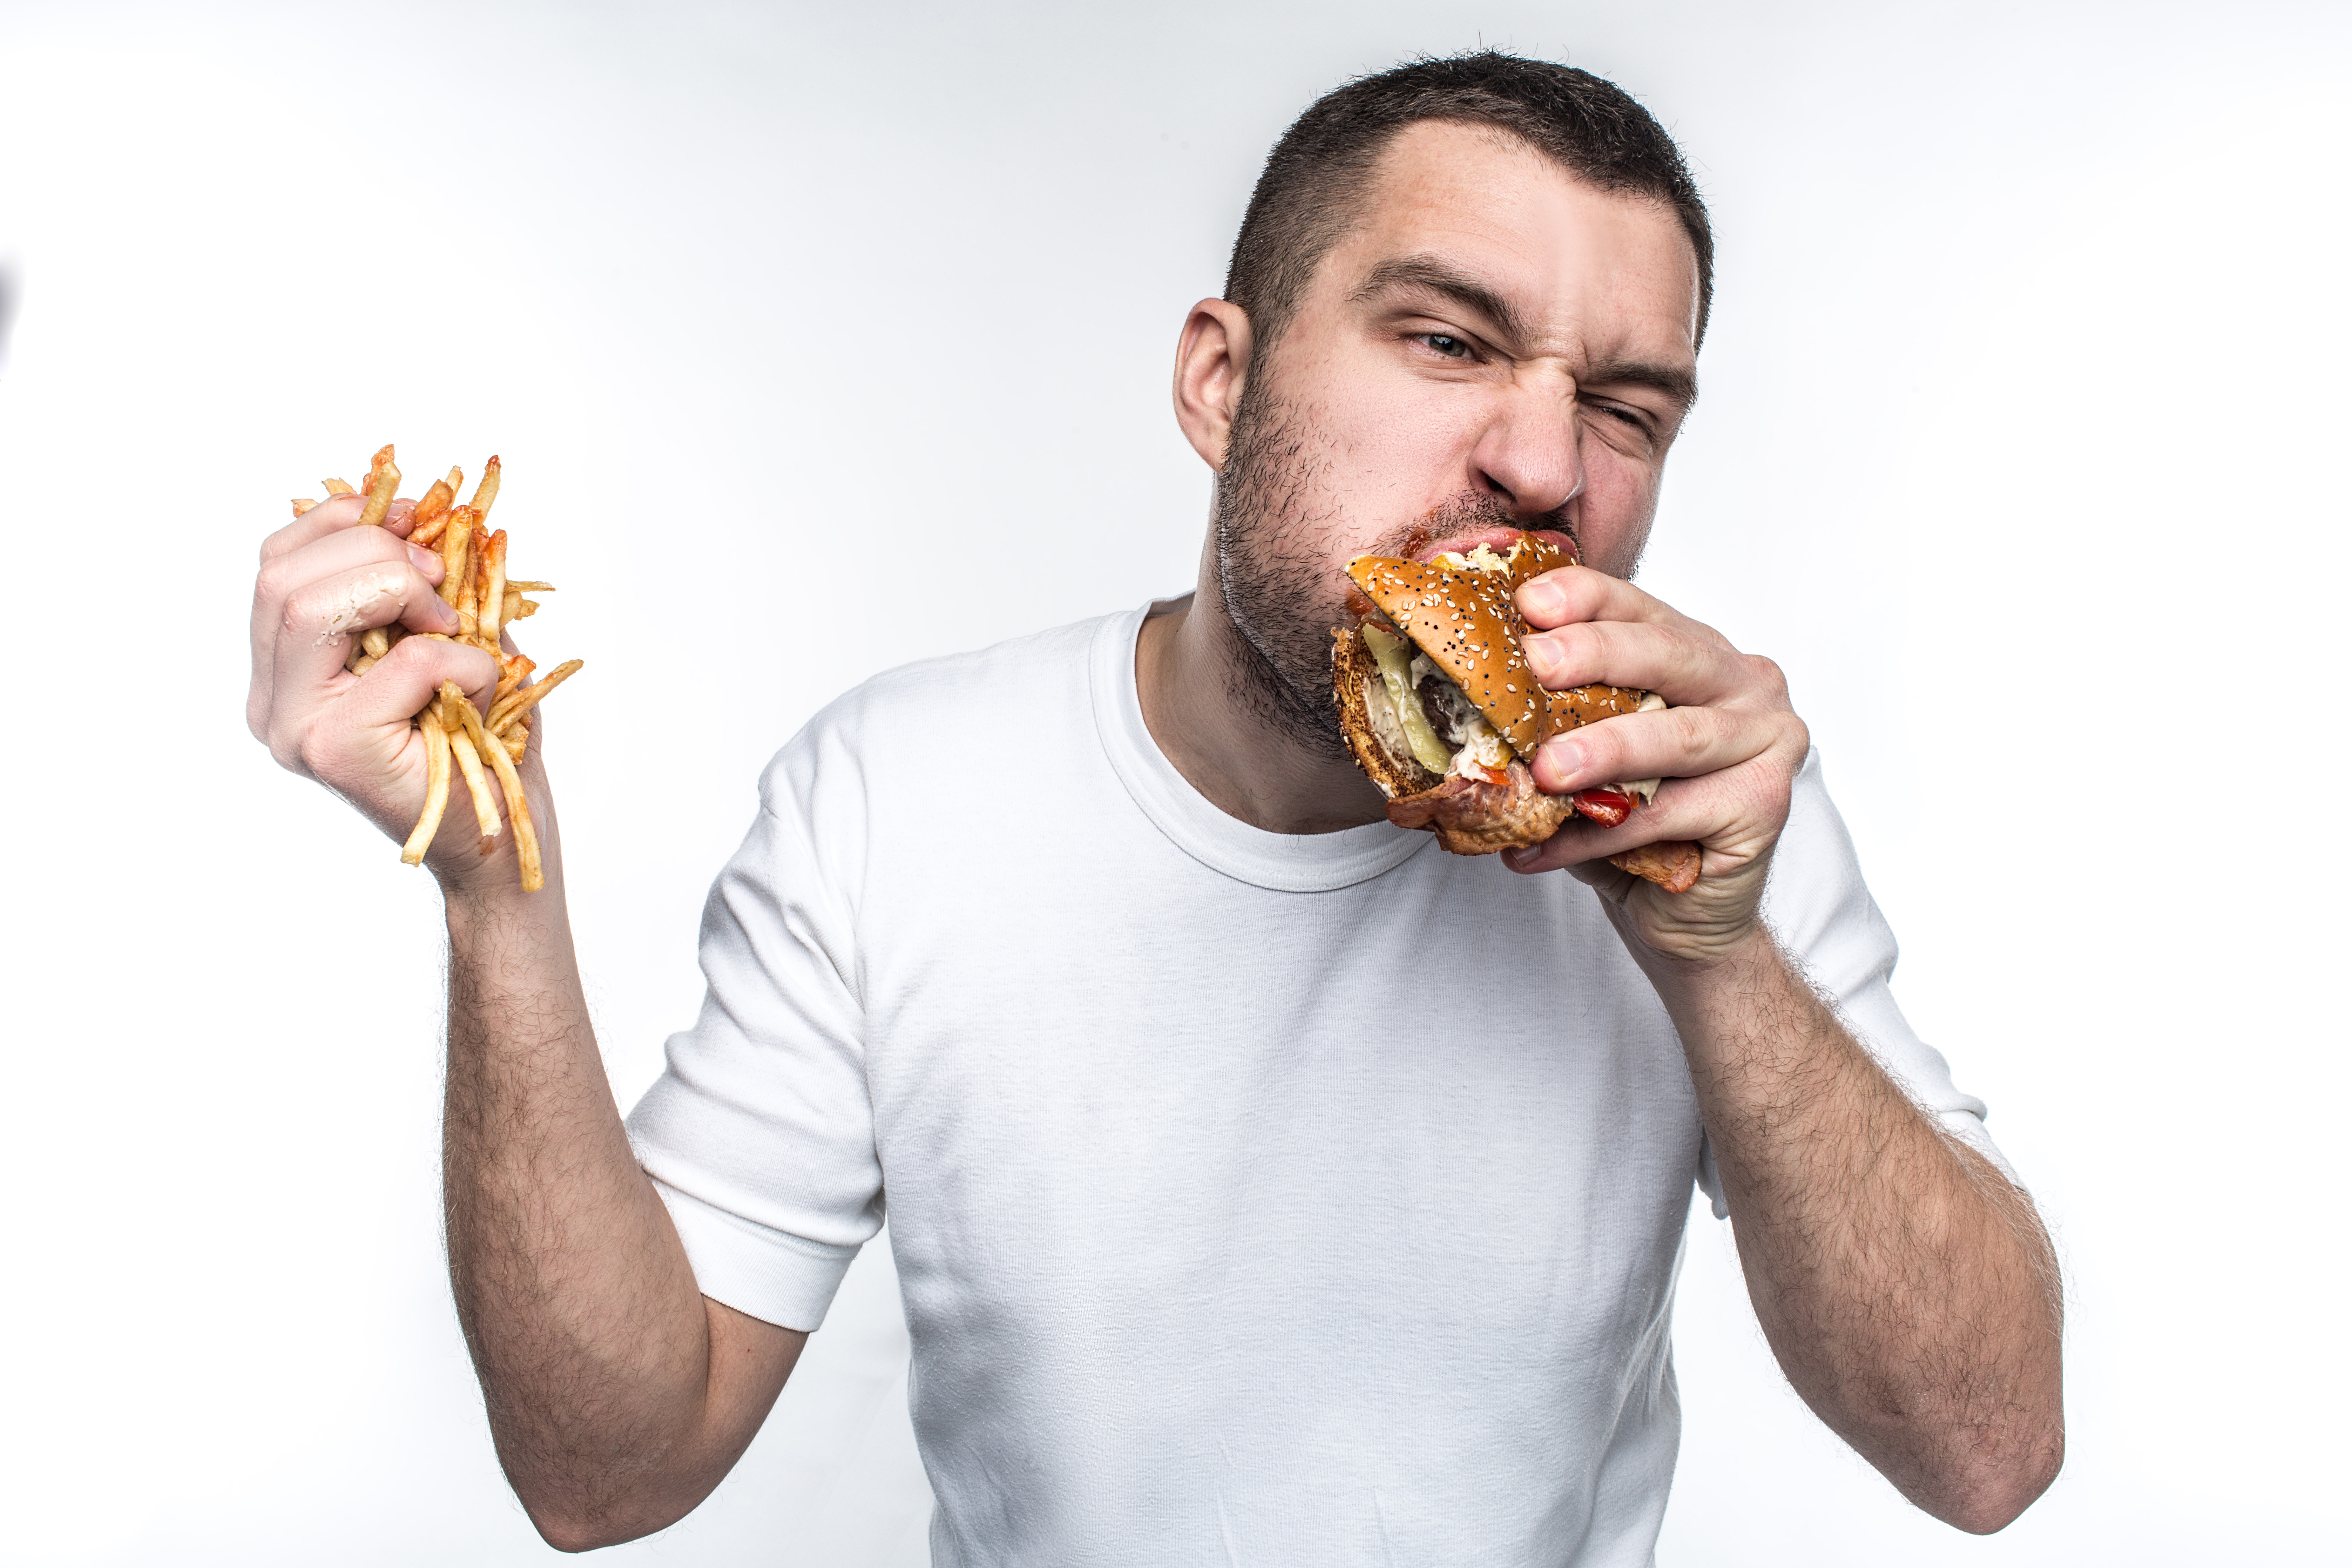 Además de subir de peso, comer demasiado rápido puede causarle graves problemas estomacales. (Foto Prensa Libre: Shutterstock)